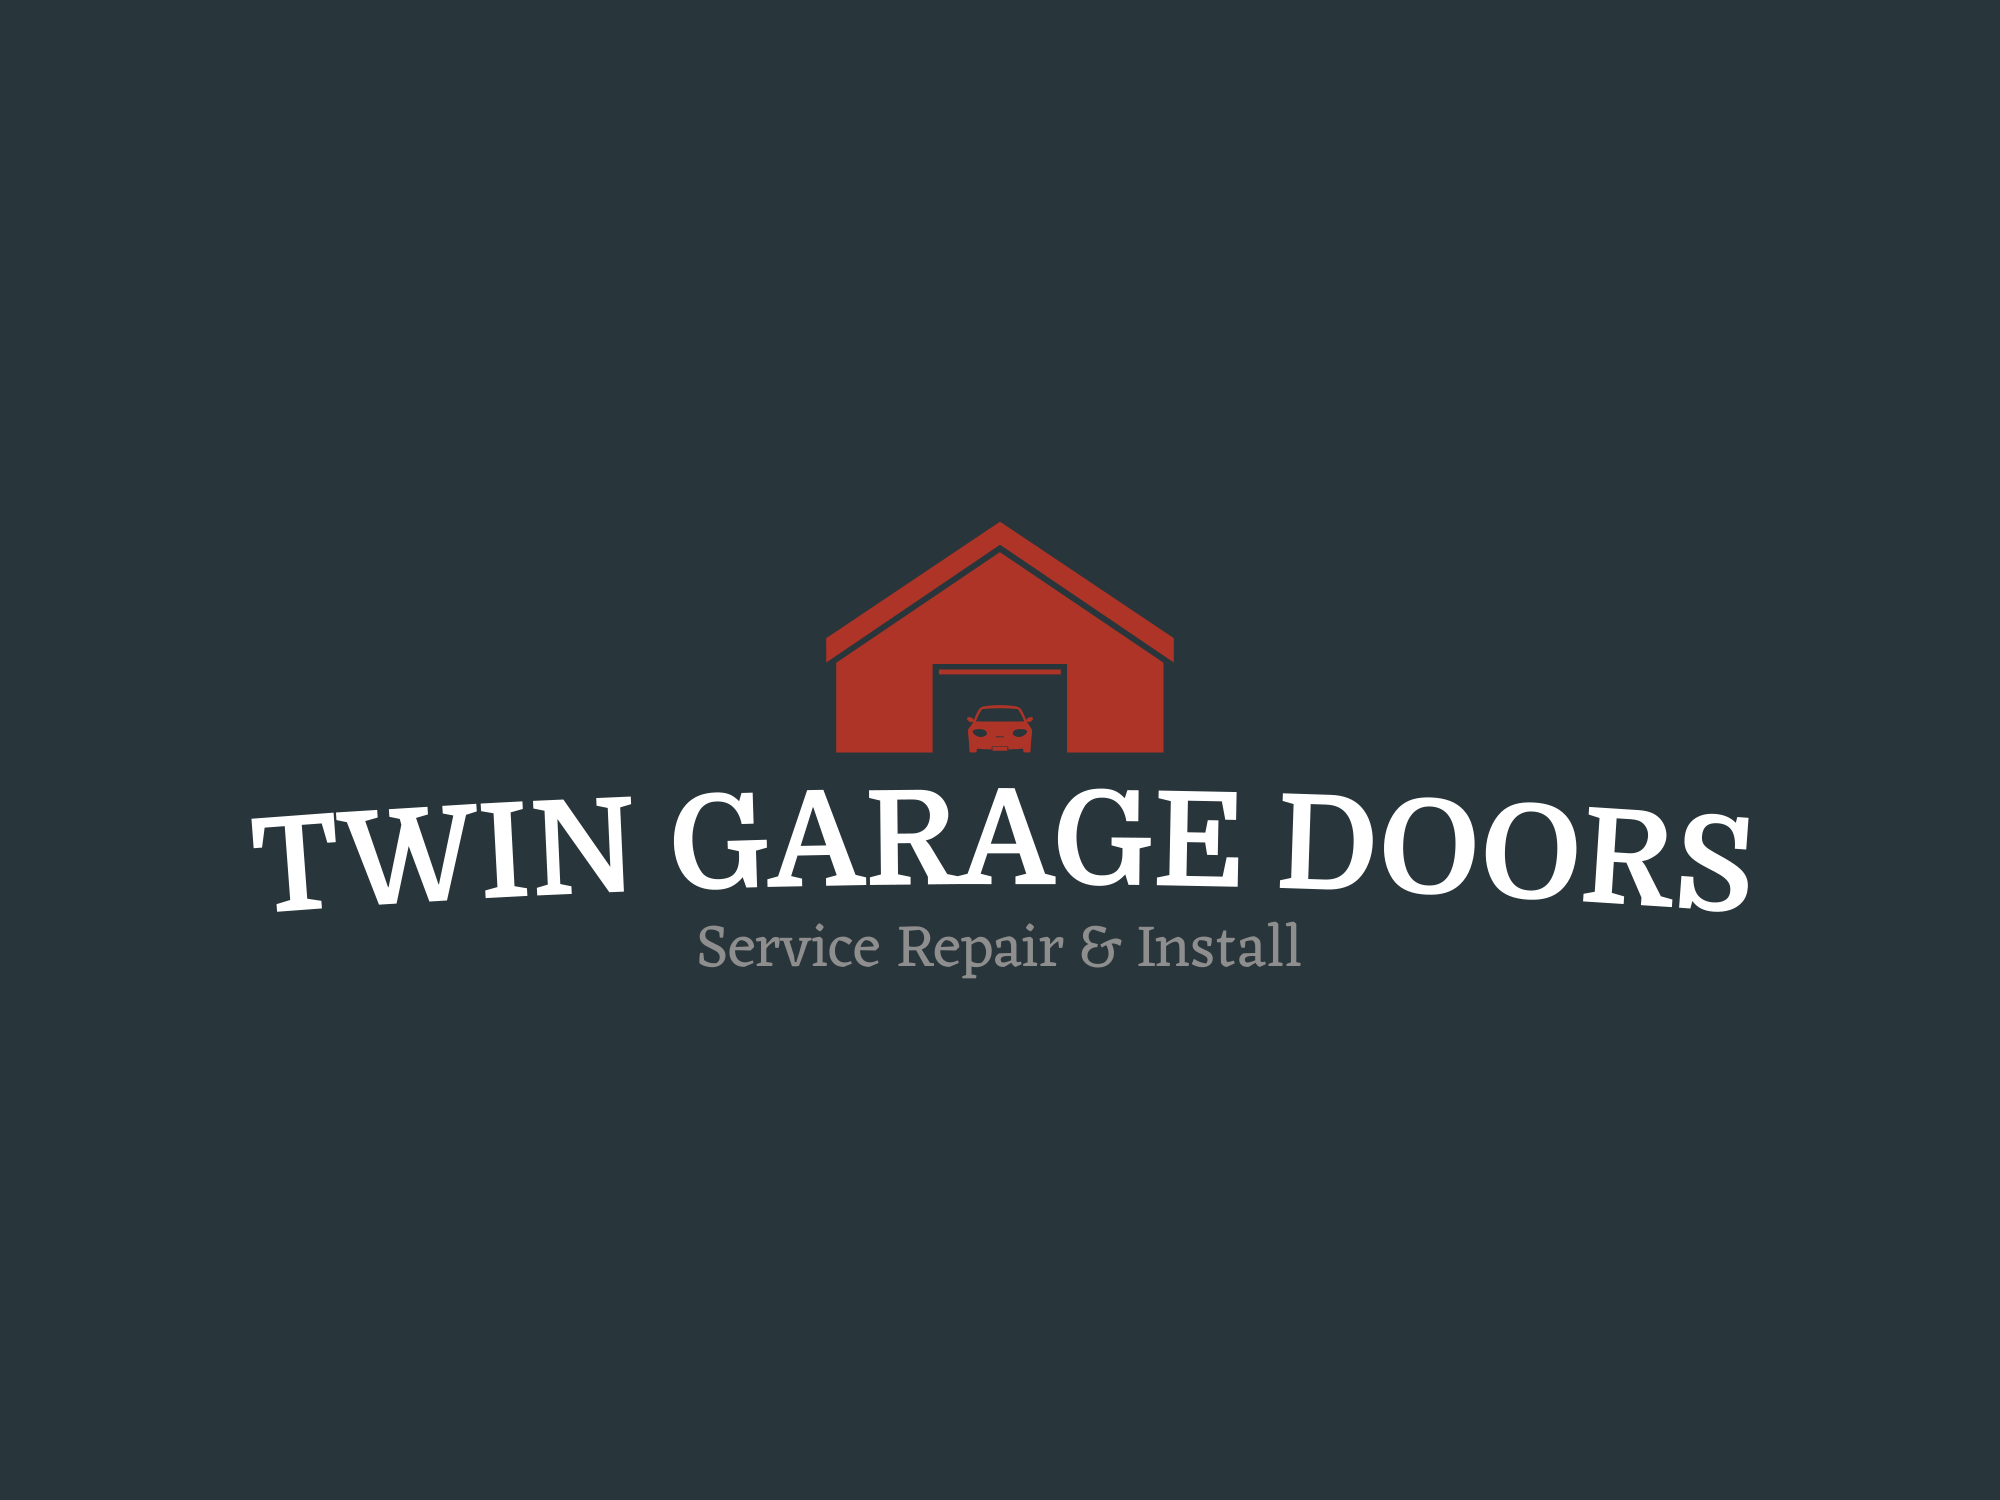 Twin Garage Doors - Unlicensed Contractor Logo